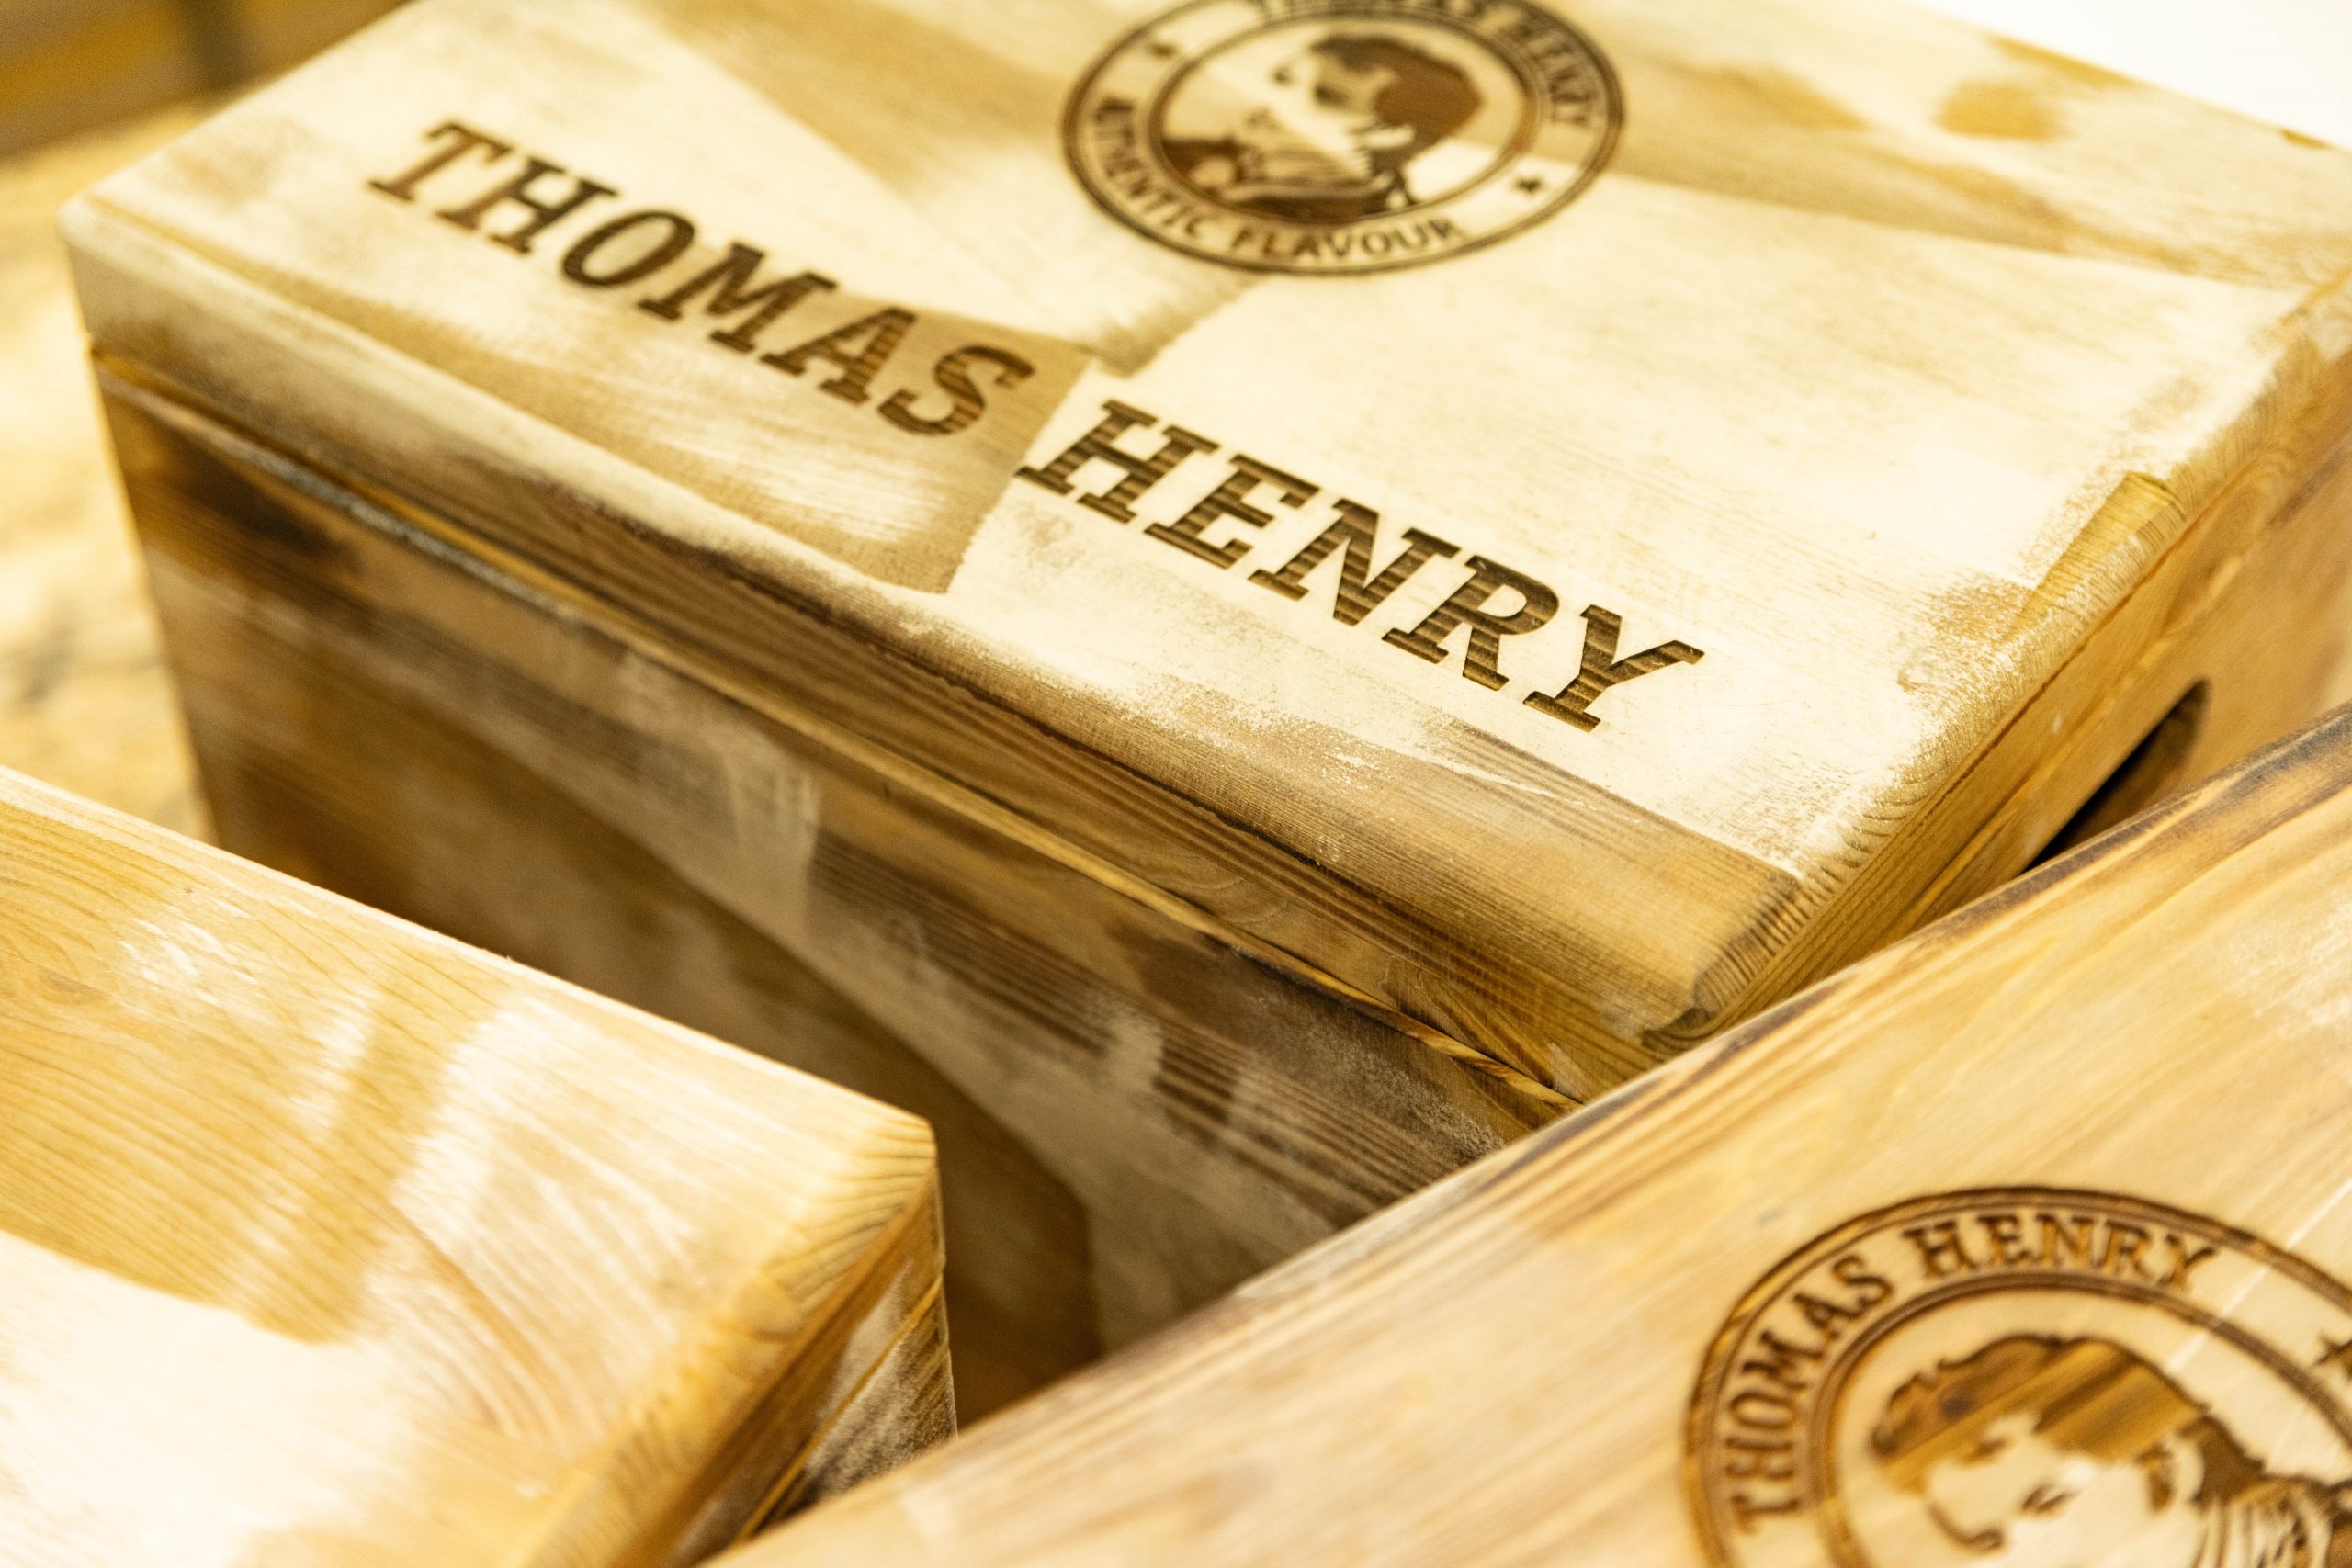 Holzkisten für Thomas Henry in einer Spezialbearbeitung